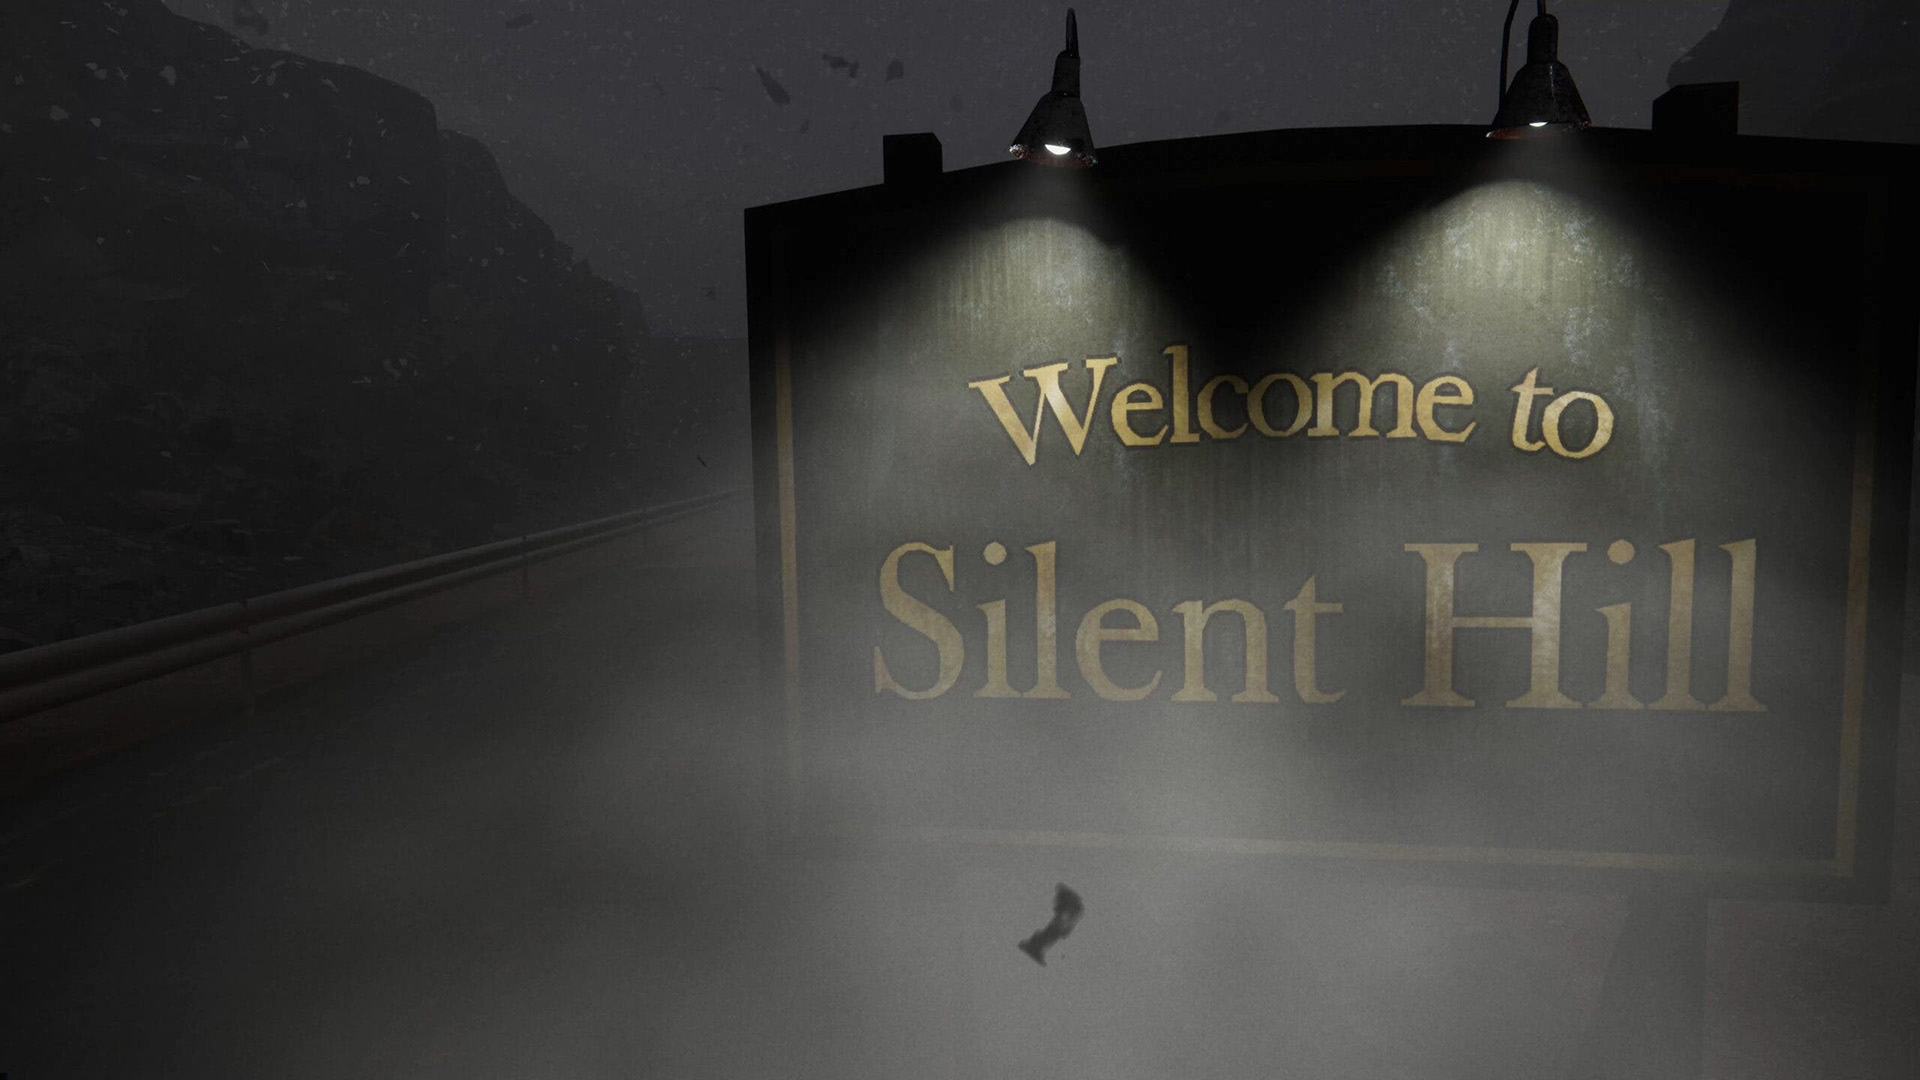 ข่าวลือ! นักพัฒนาชาวญี่ปุ่นจะเปิดตัว Silent Hill ภาคใหม่ในช่วงฤดูร้อนนี้